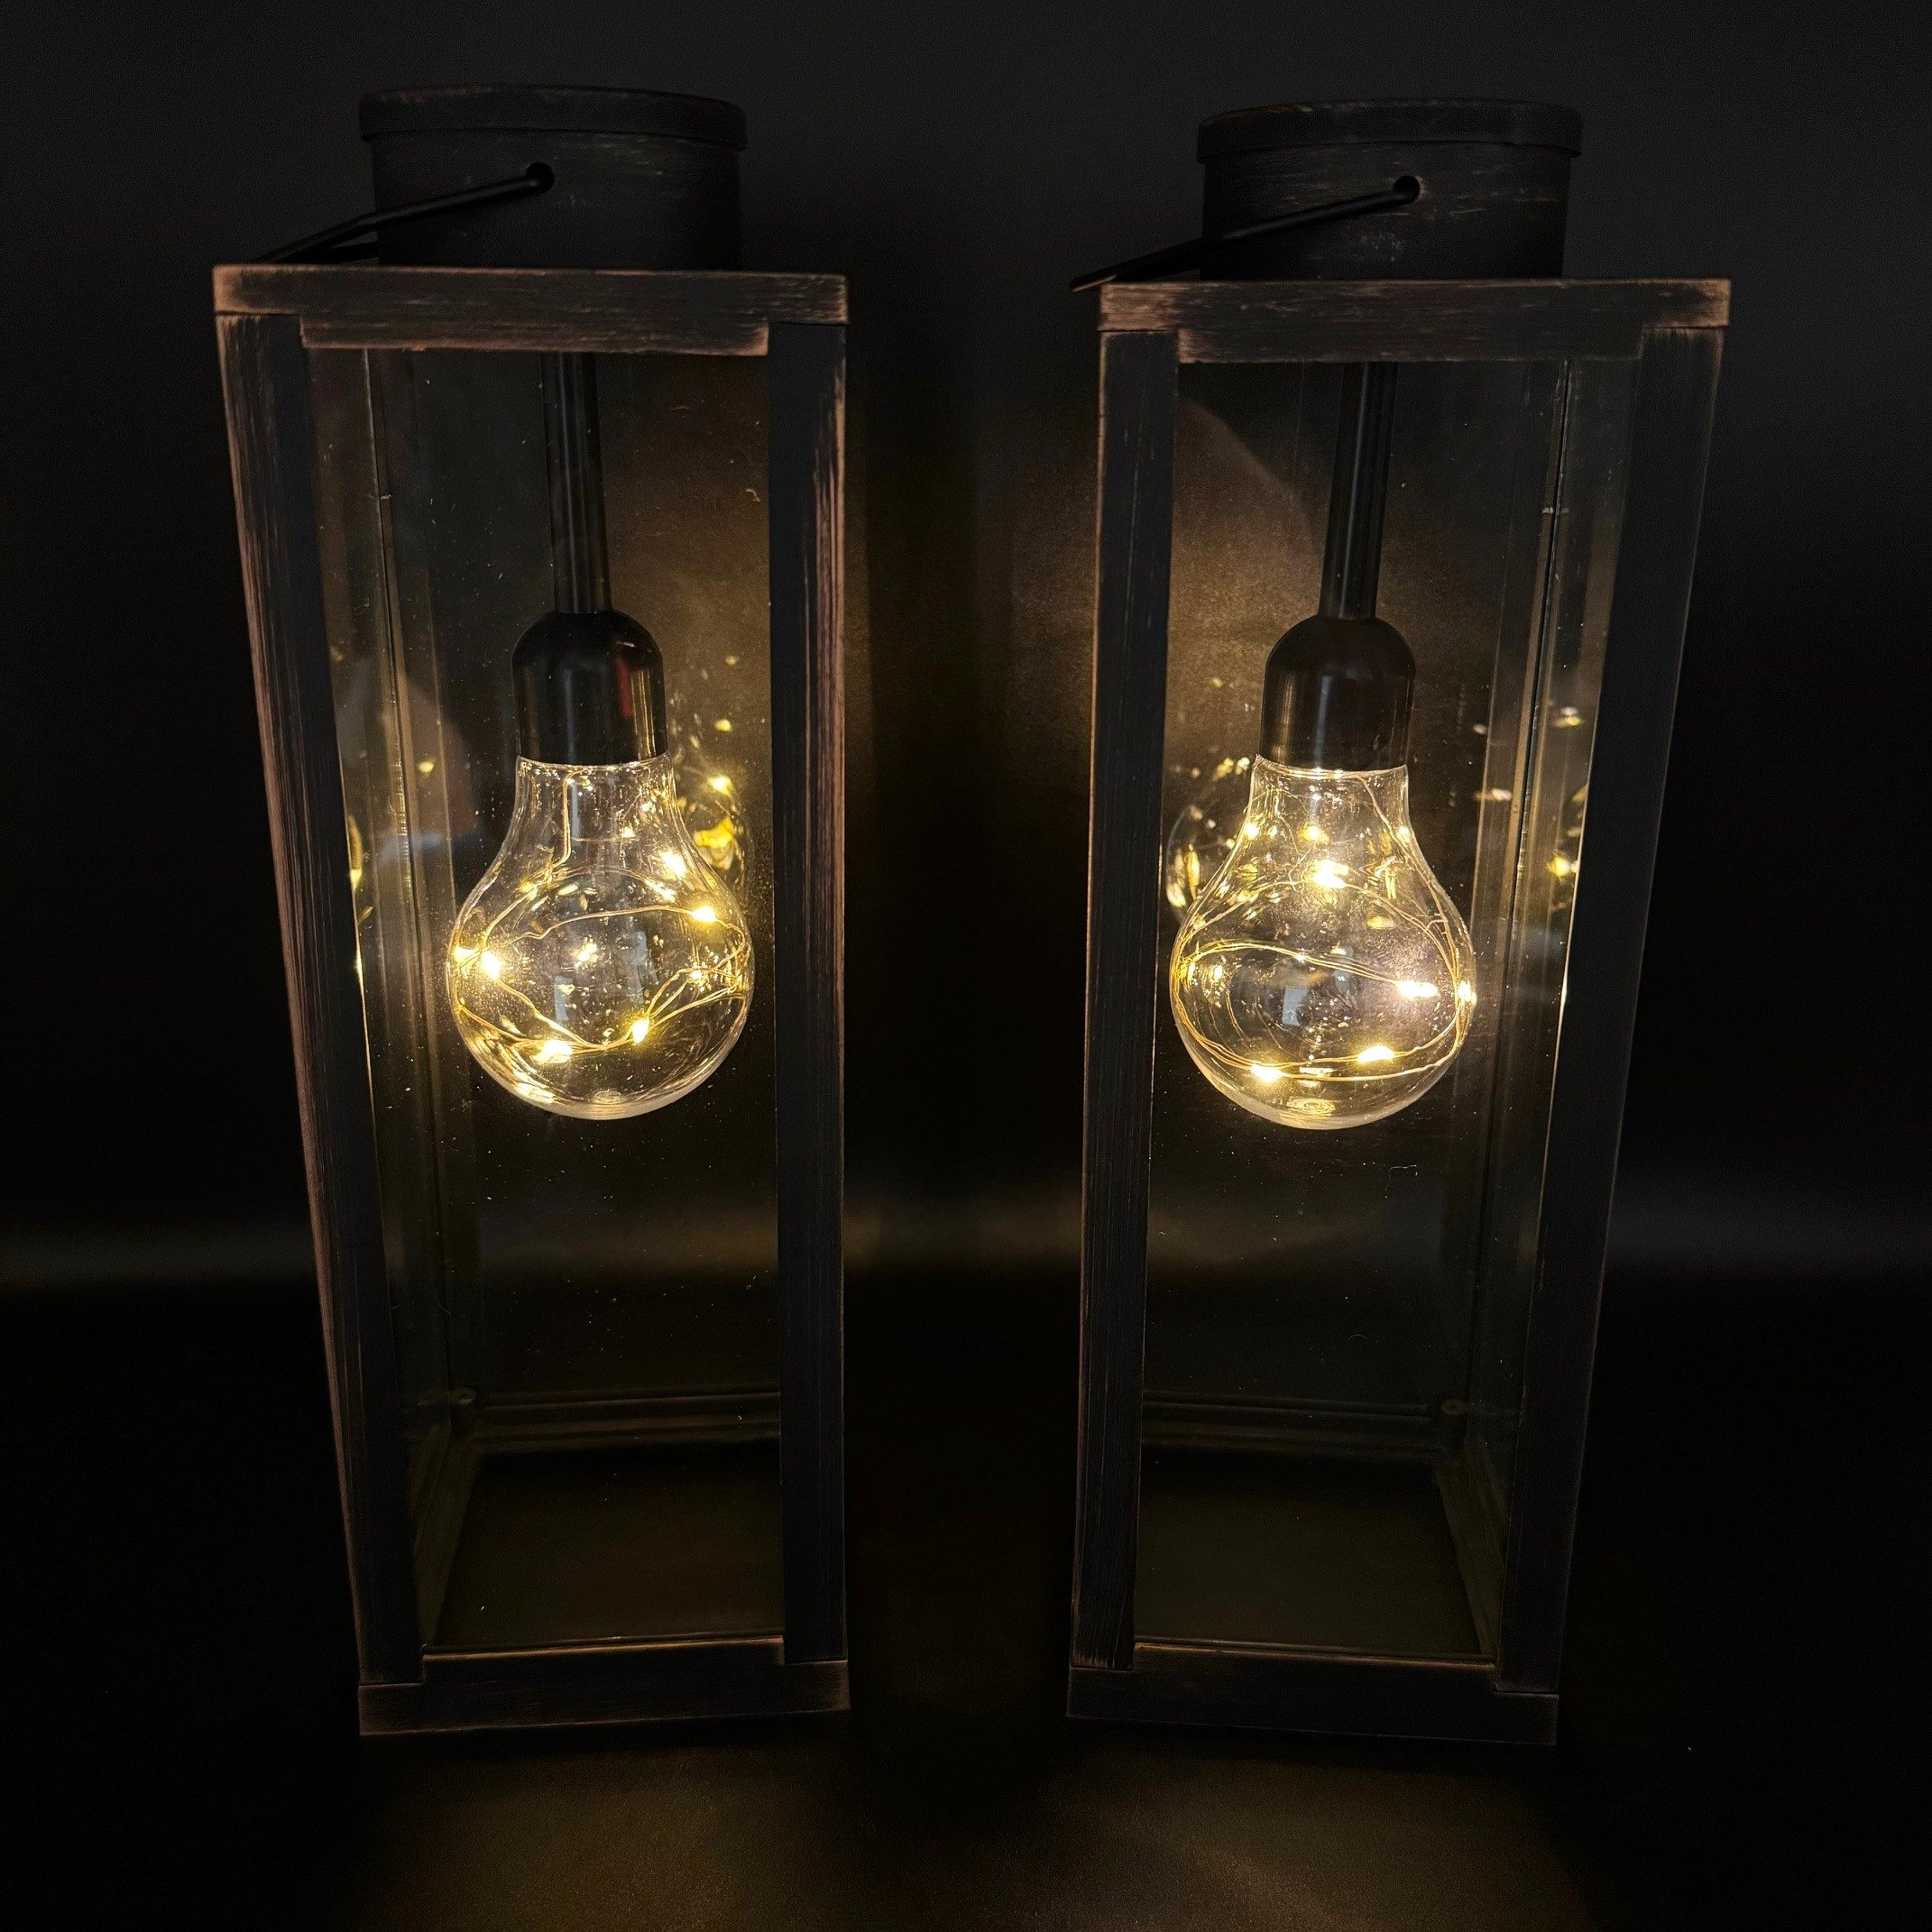 Online-Fuchs LED Laterne 2 Laternen Set im Vintage Look - Outdoor geeignet, Glühbirne mit LED-Lichterkette und Timer, Warmweiß, Weiß oder Schwarz - 30 cm groß